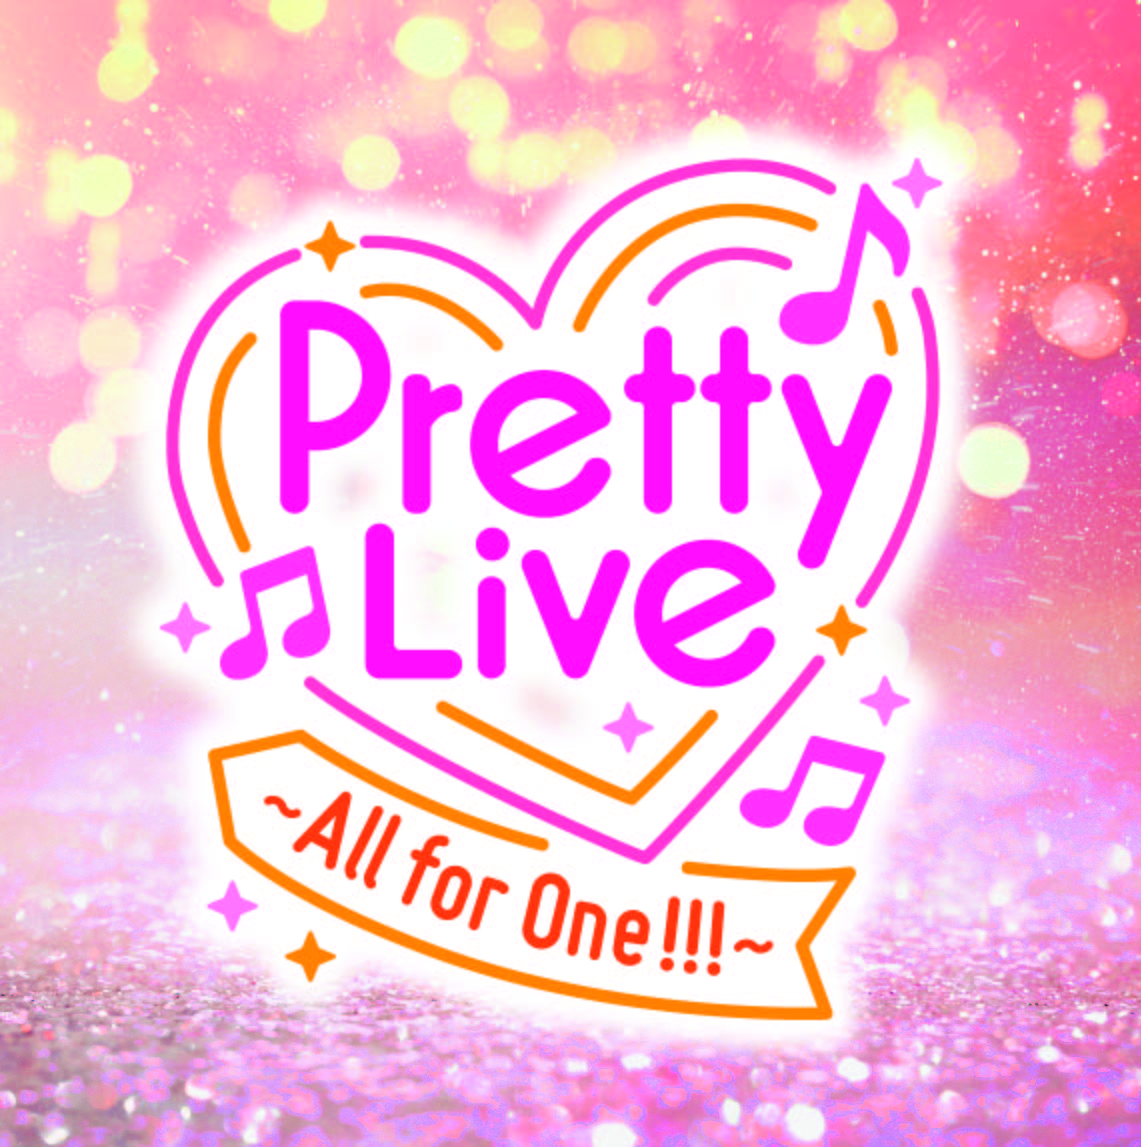 9月24日(土):Pretty Live！～All for One !!!～【物販入場整理券】